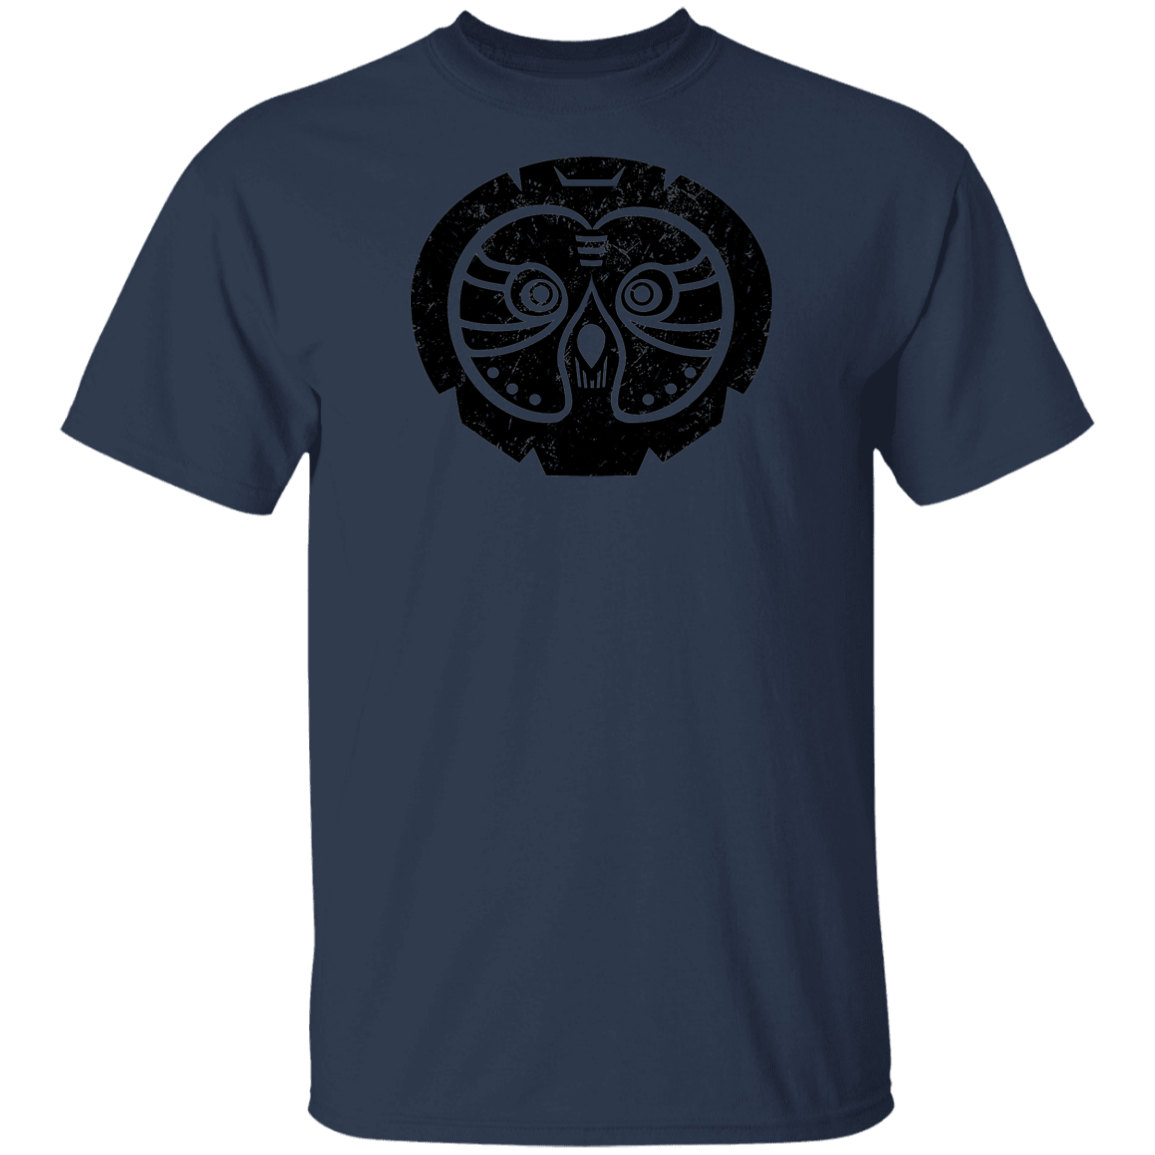 Black Distressed Emblem T-Shirt for Kids (Great Grey Owl/Sage)